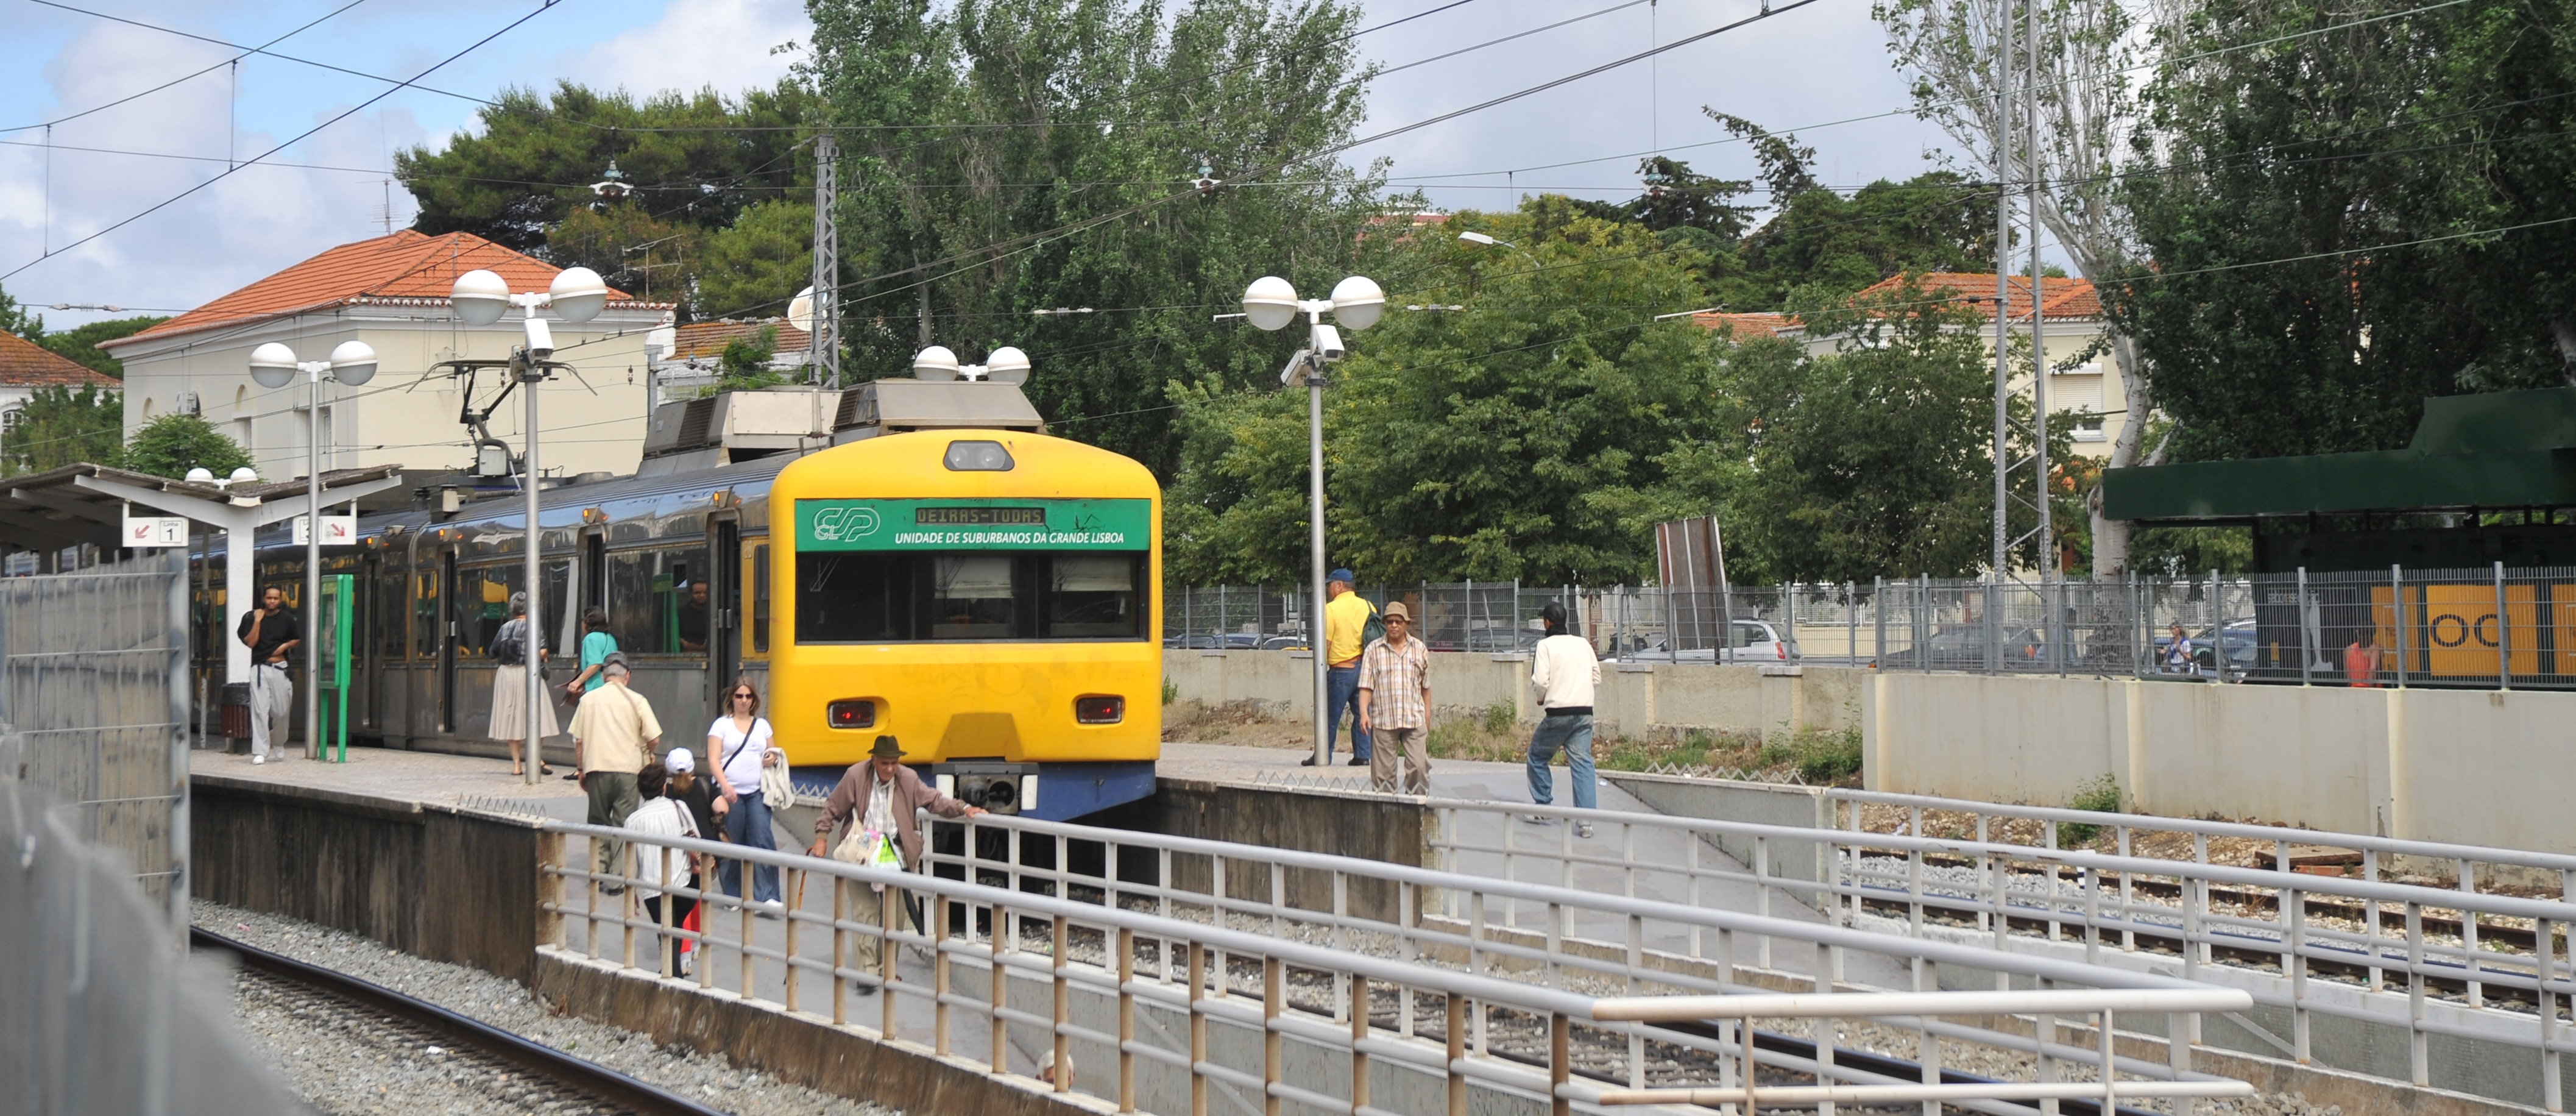 estação de comboios de Oeiras